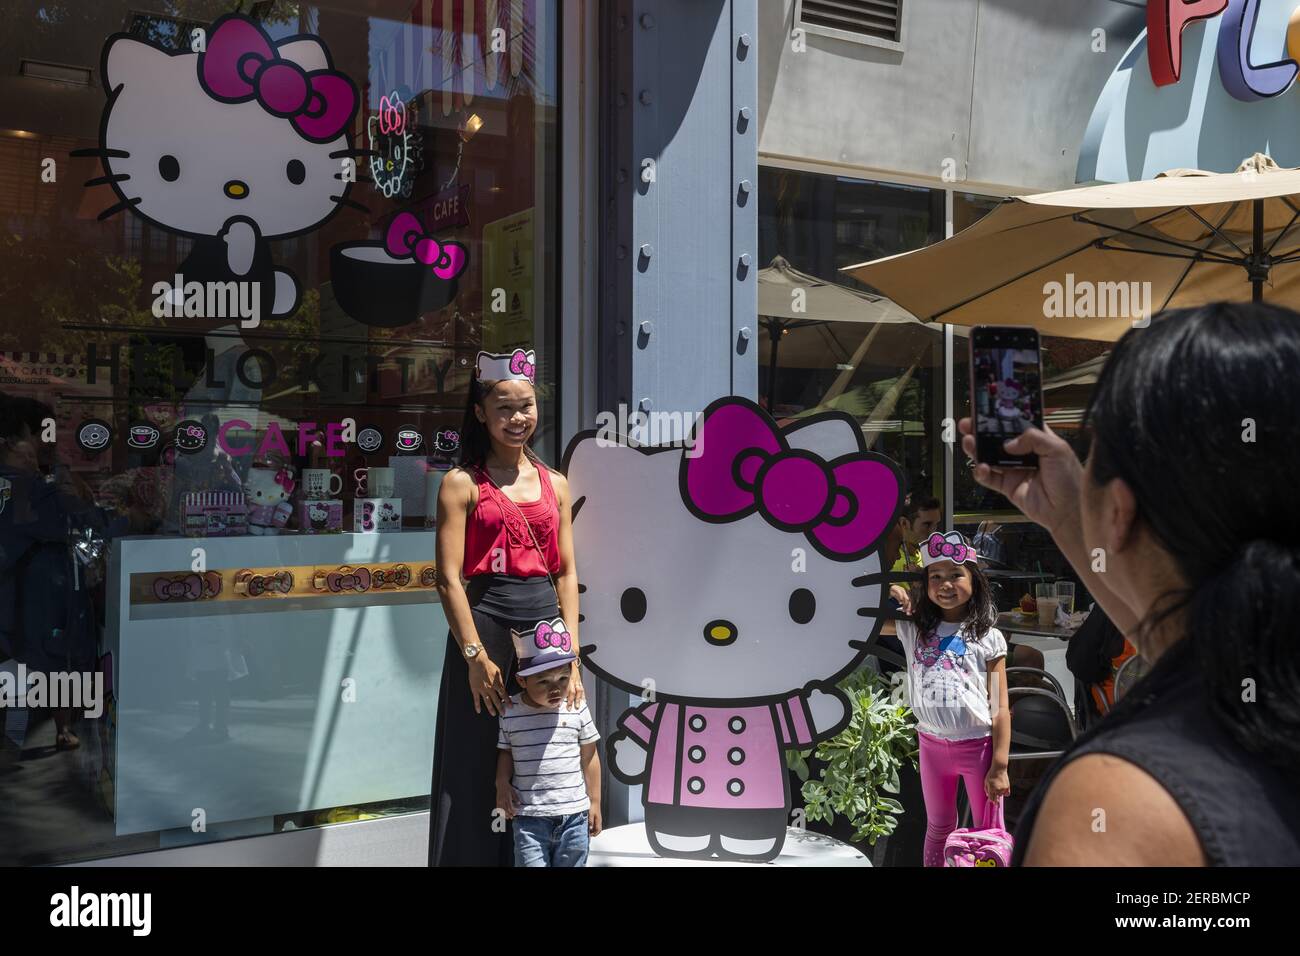 I fedeli fan del personaggio Hello Kitty scattano foto con il personaggio dei  cartoni animati di fronte al recentemente aperto Hello Kitty Mini Cafe a  San Jose, il terzo negozio negli Stati